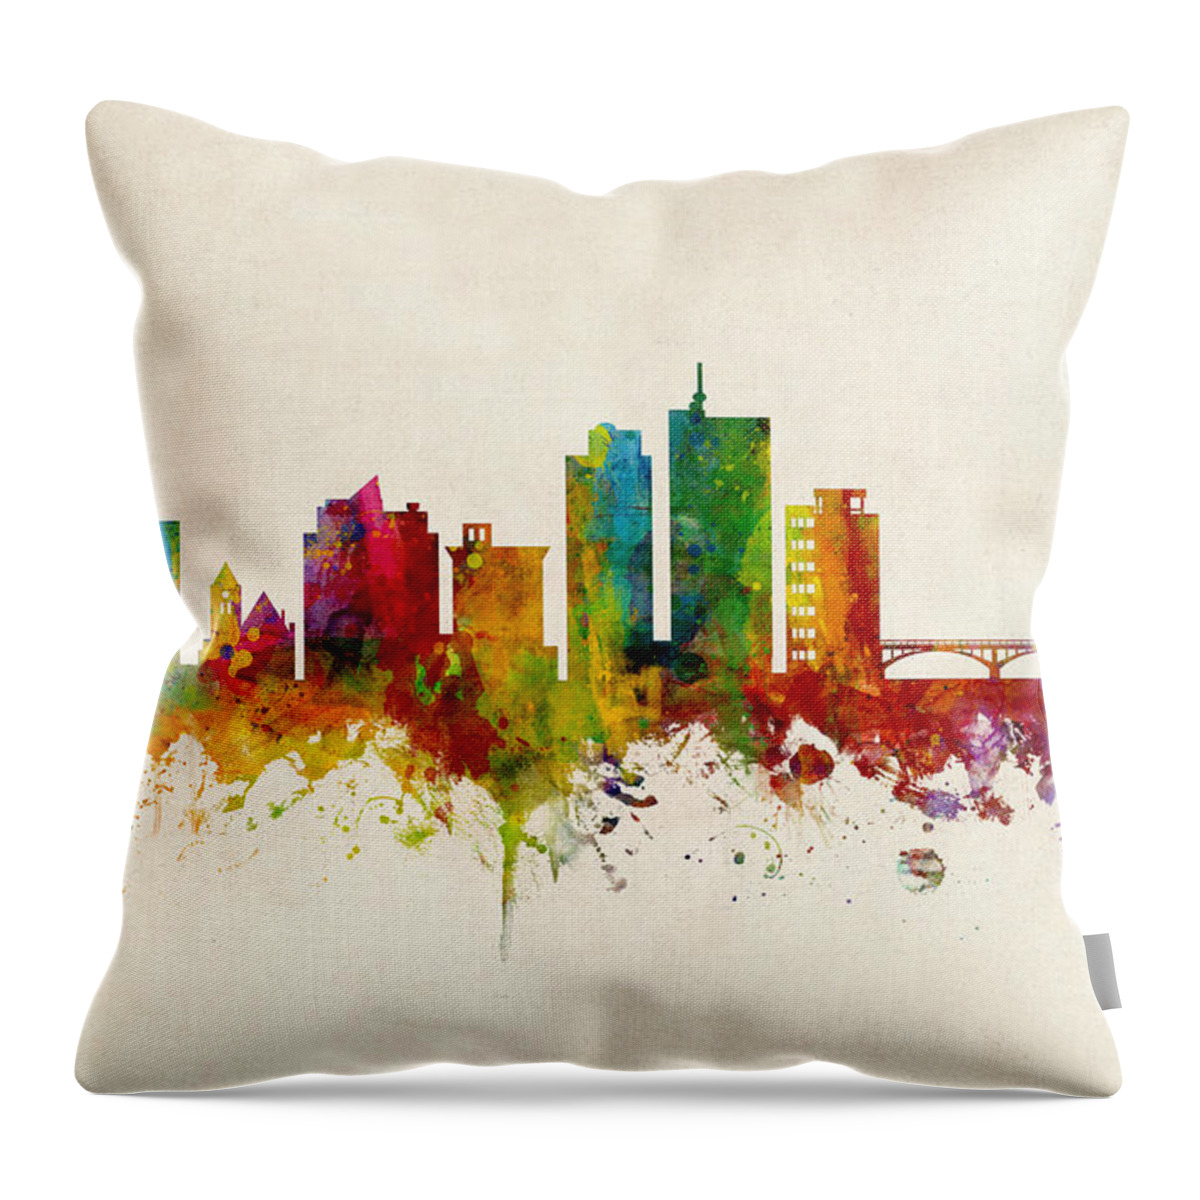 Cedar Rapids Throw Pillow featuring the digital art Cedar Rapids Iowa Skyline #1 by Michael Tompsett